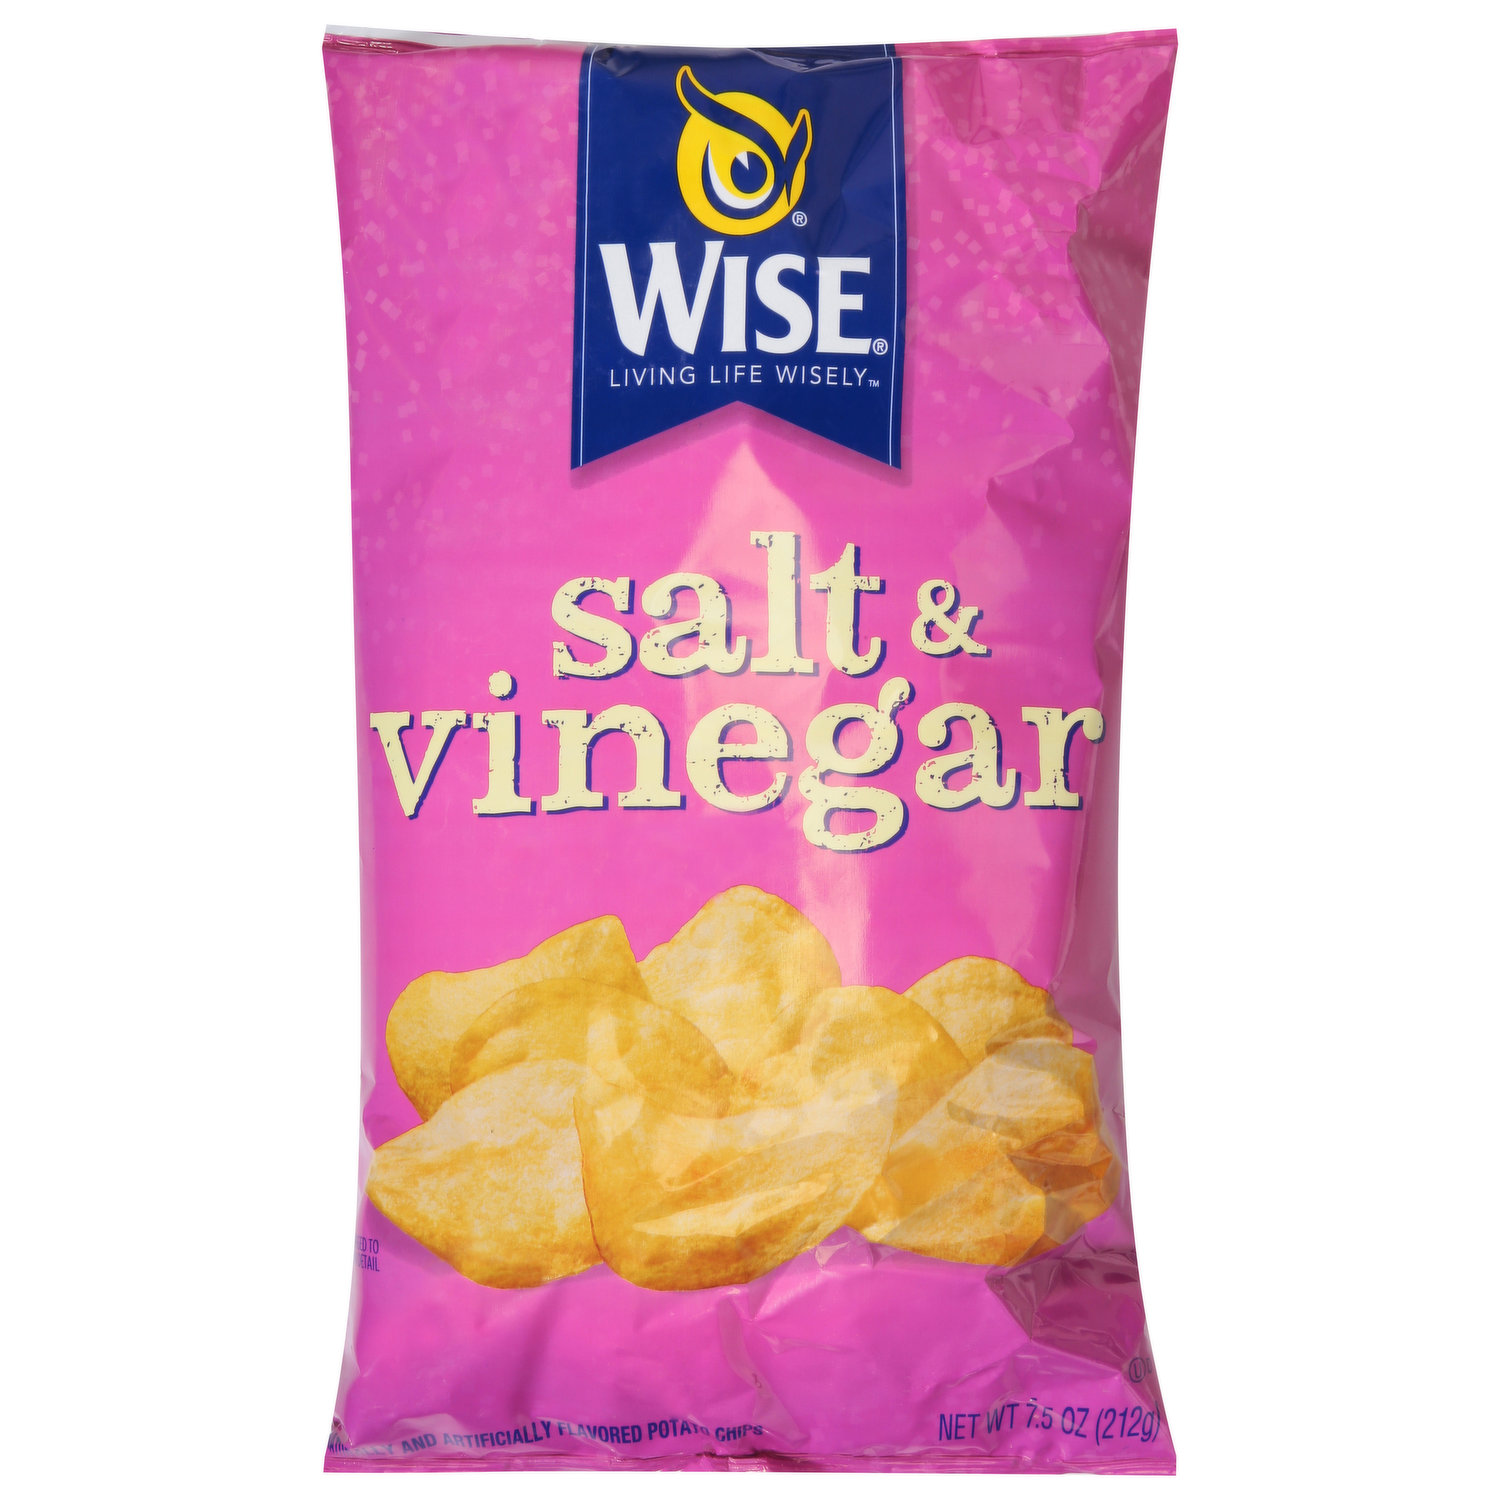 lays chips salt vinegar